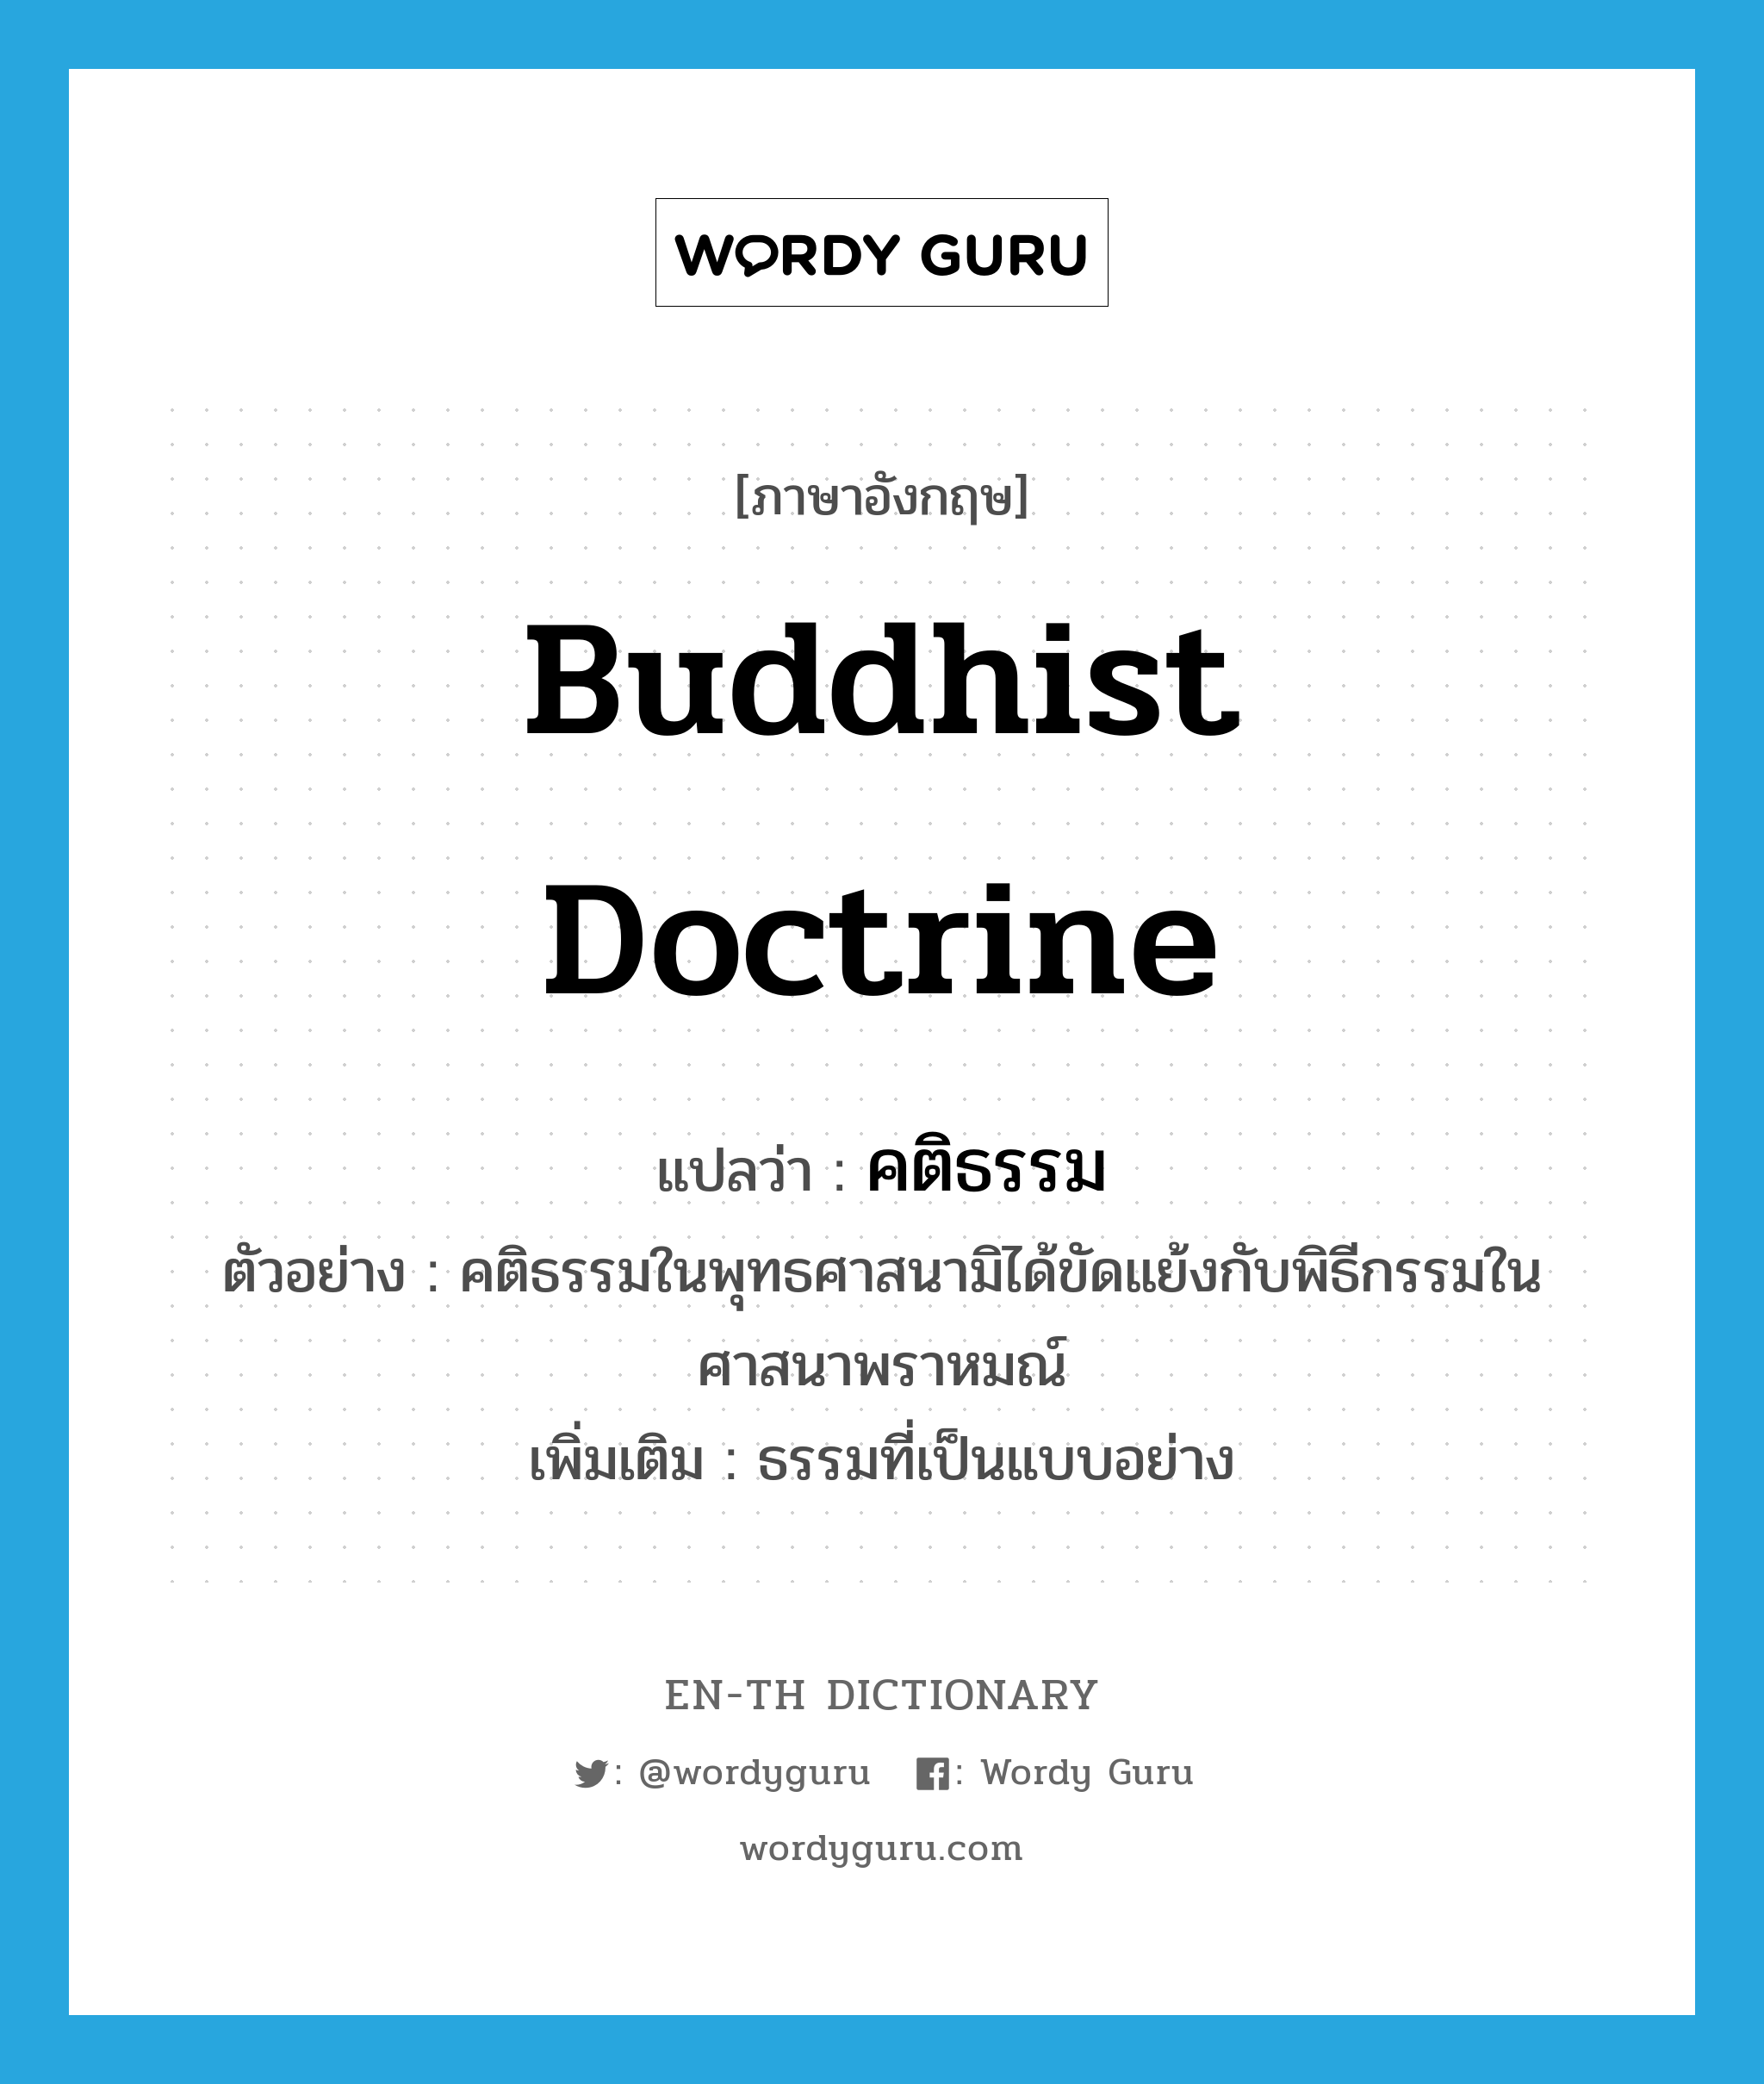 Buddhist doctrine แปลว่า?, คำศัพท์ภาษาอังกฤษ Buddhist doctrine แปลว่า คติธรรม ประเภท N ตัวอย่าง คติธรรมในพุทธศาสนามิได้ขัดแย้งกับพิธีกรรมในศาสนาพราหมณ์ เพิ่มเติม ธรรมที่เป็นแบบอย่าง หมวด N